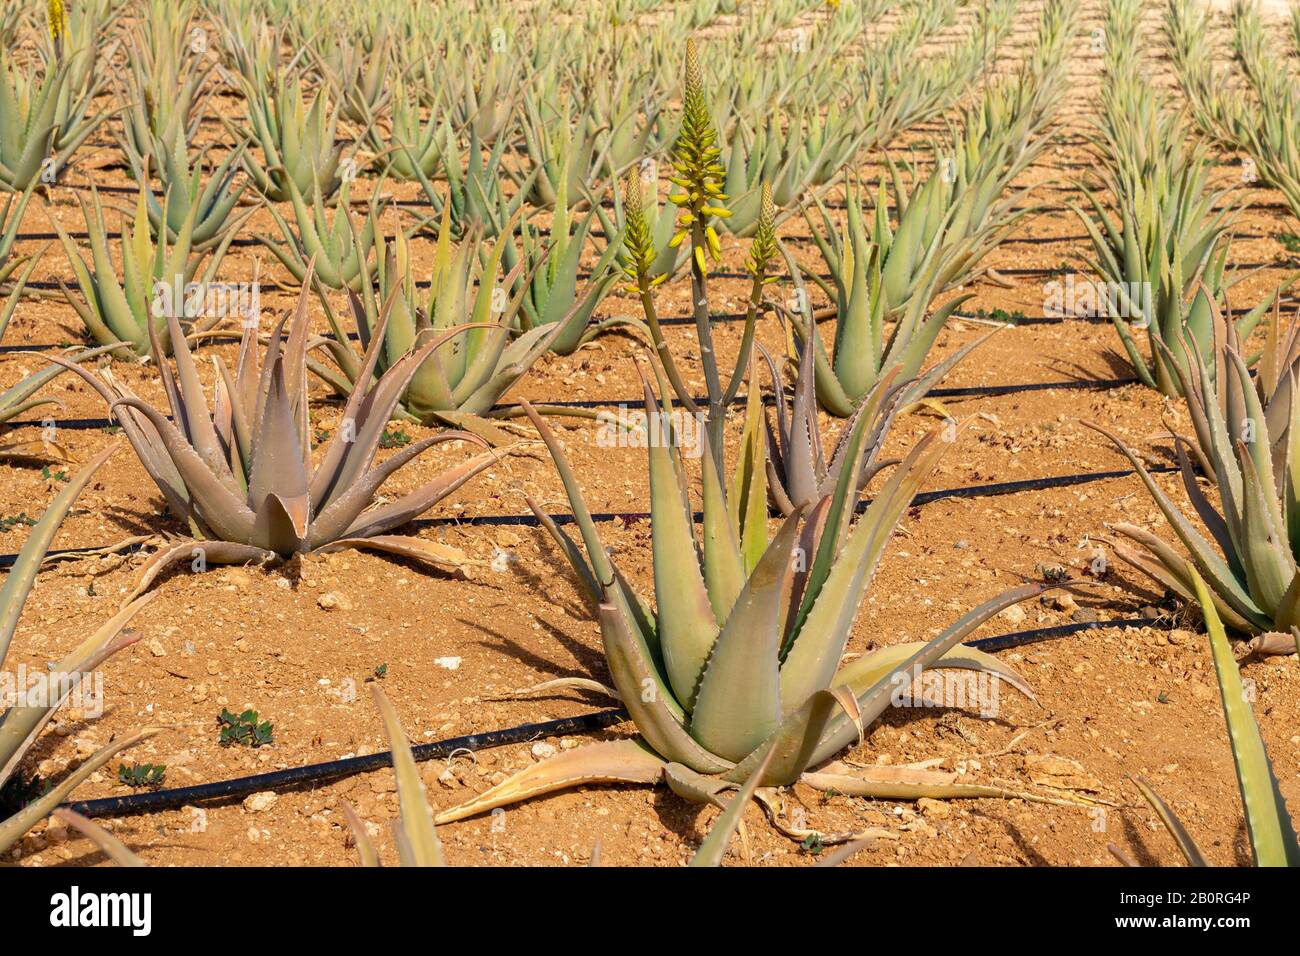 Aloe Vera plants on a farmland Stock Photo